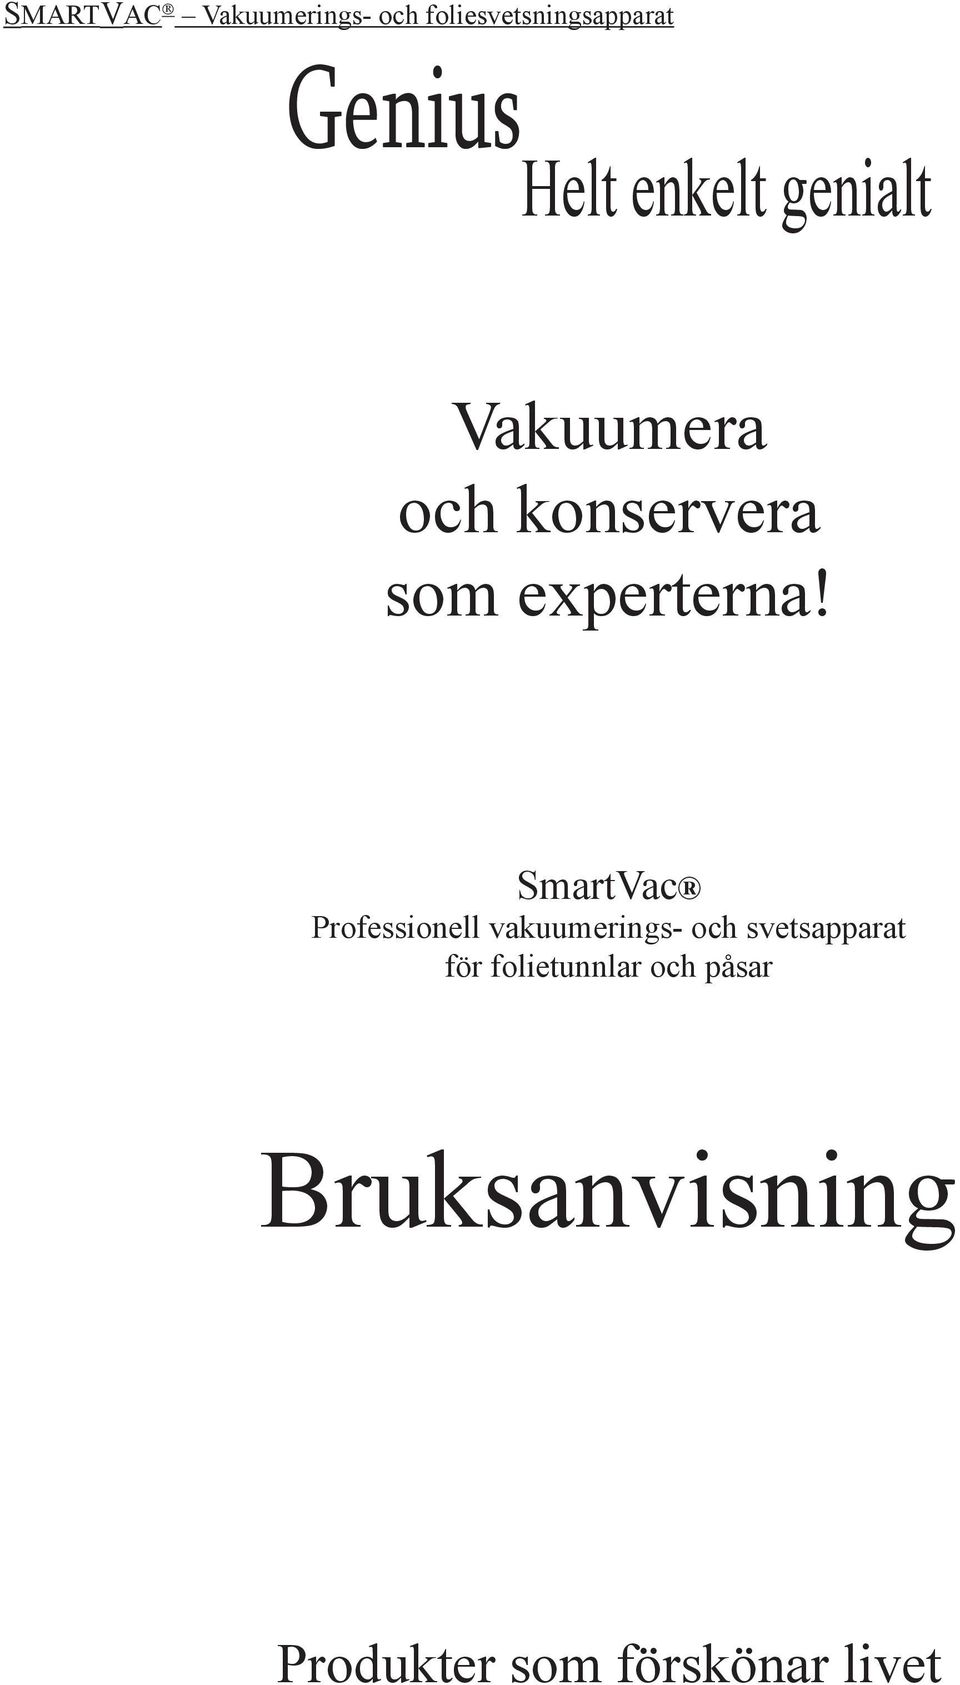 SmartVac Professionell vakuumerings- och